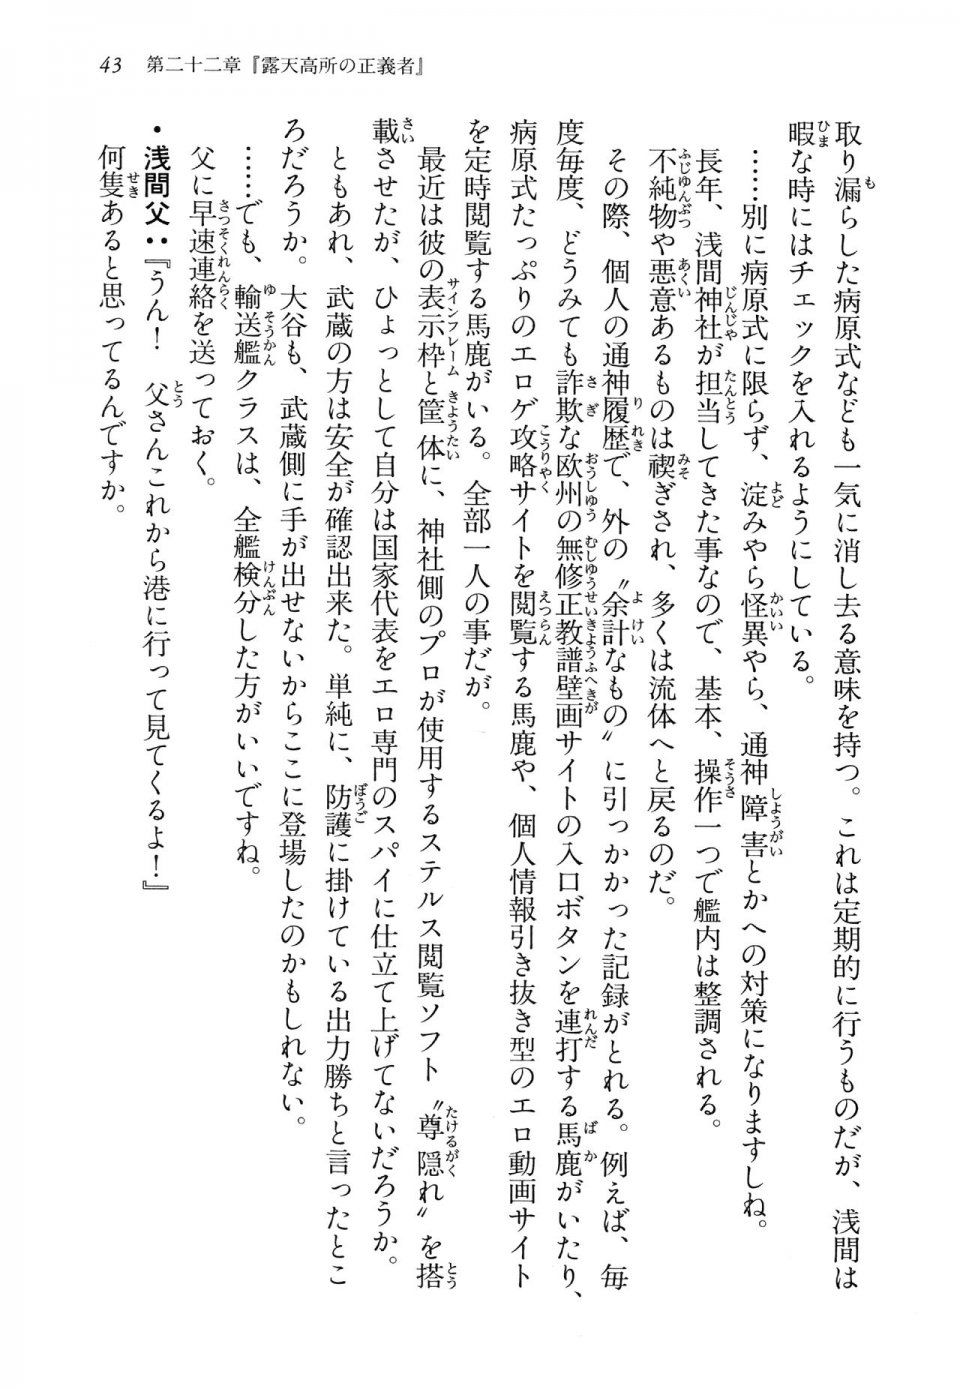 Kyoukai Senjou no Horizon LN Vol 14(6B) - Photo #43